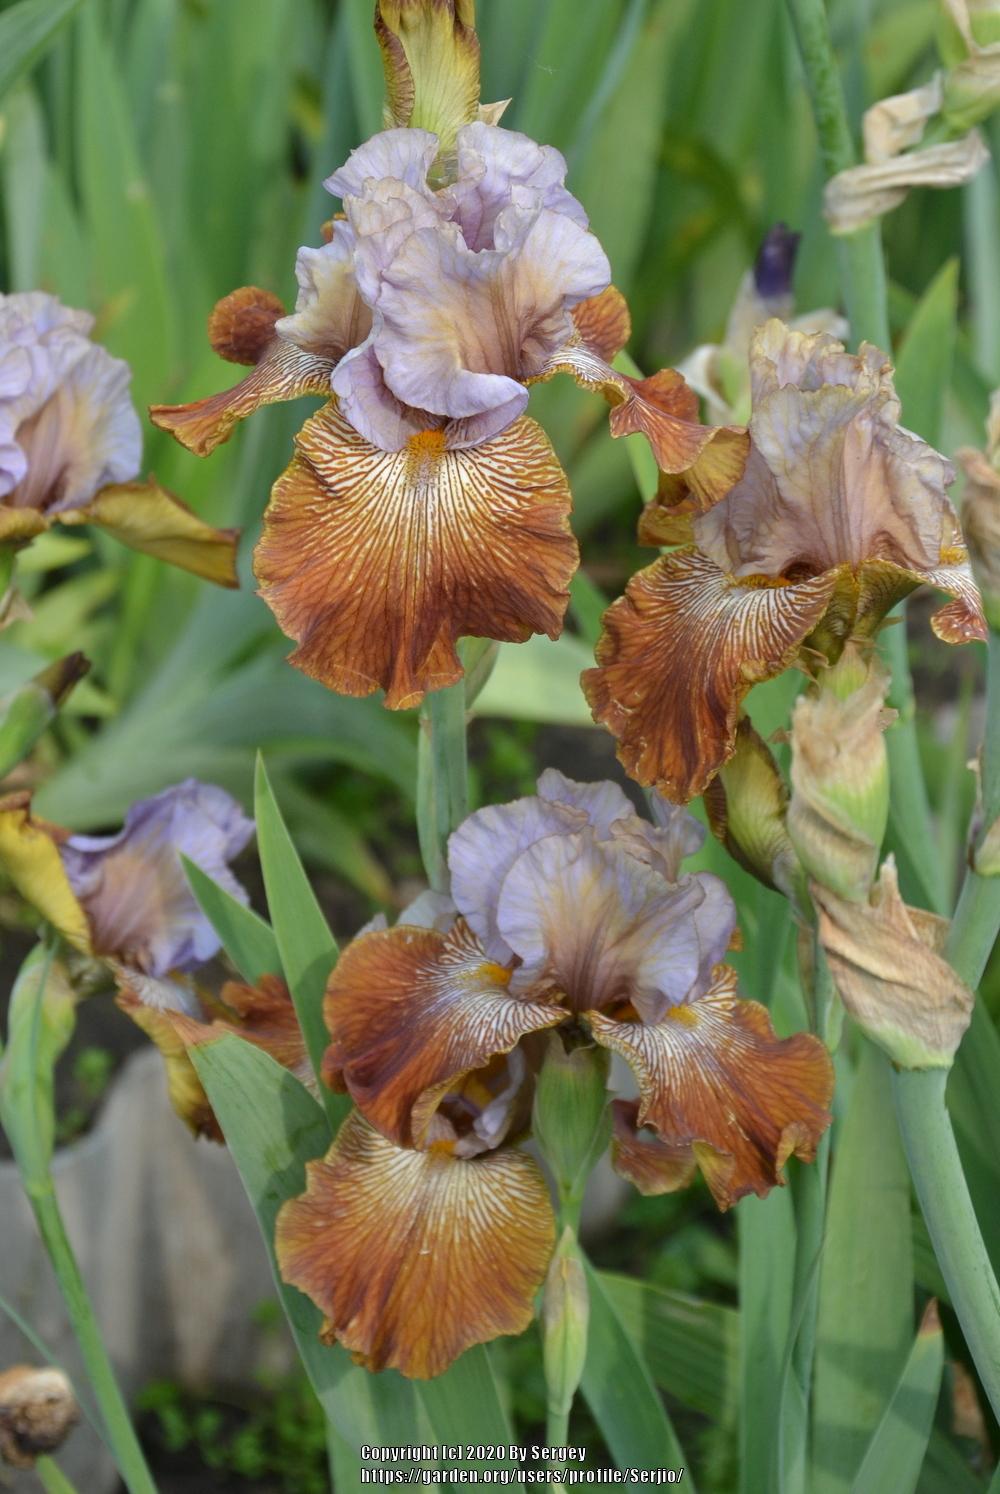 Photo of Tall Bearded Iris (Iris 'Fuori dal Coro') uploaded by Serjio